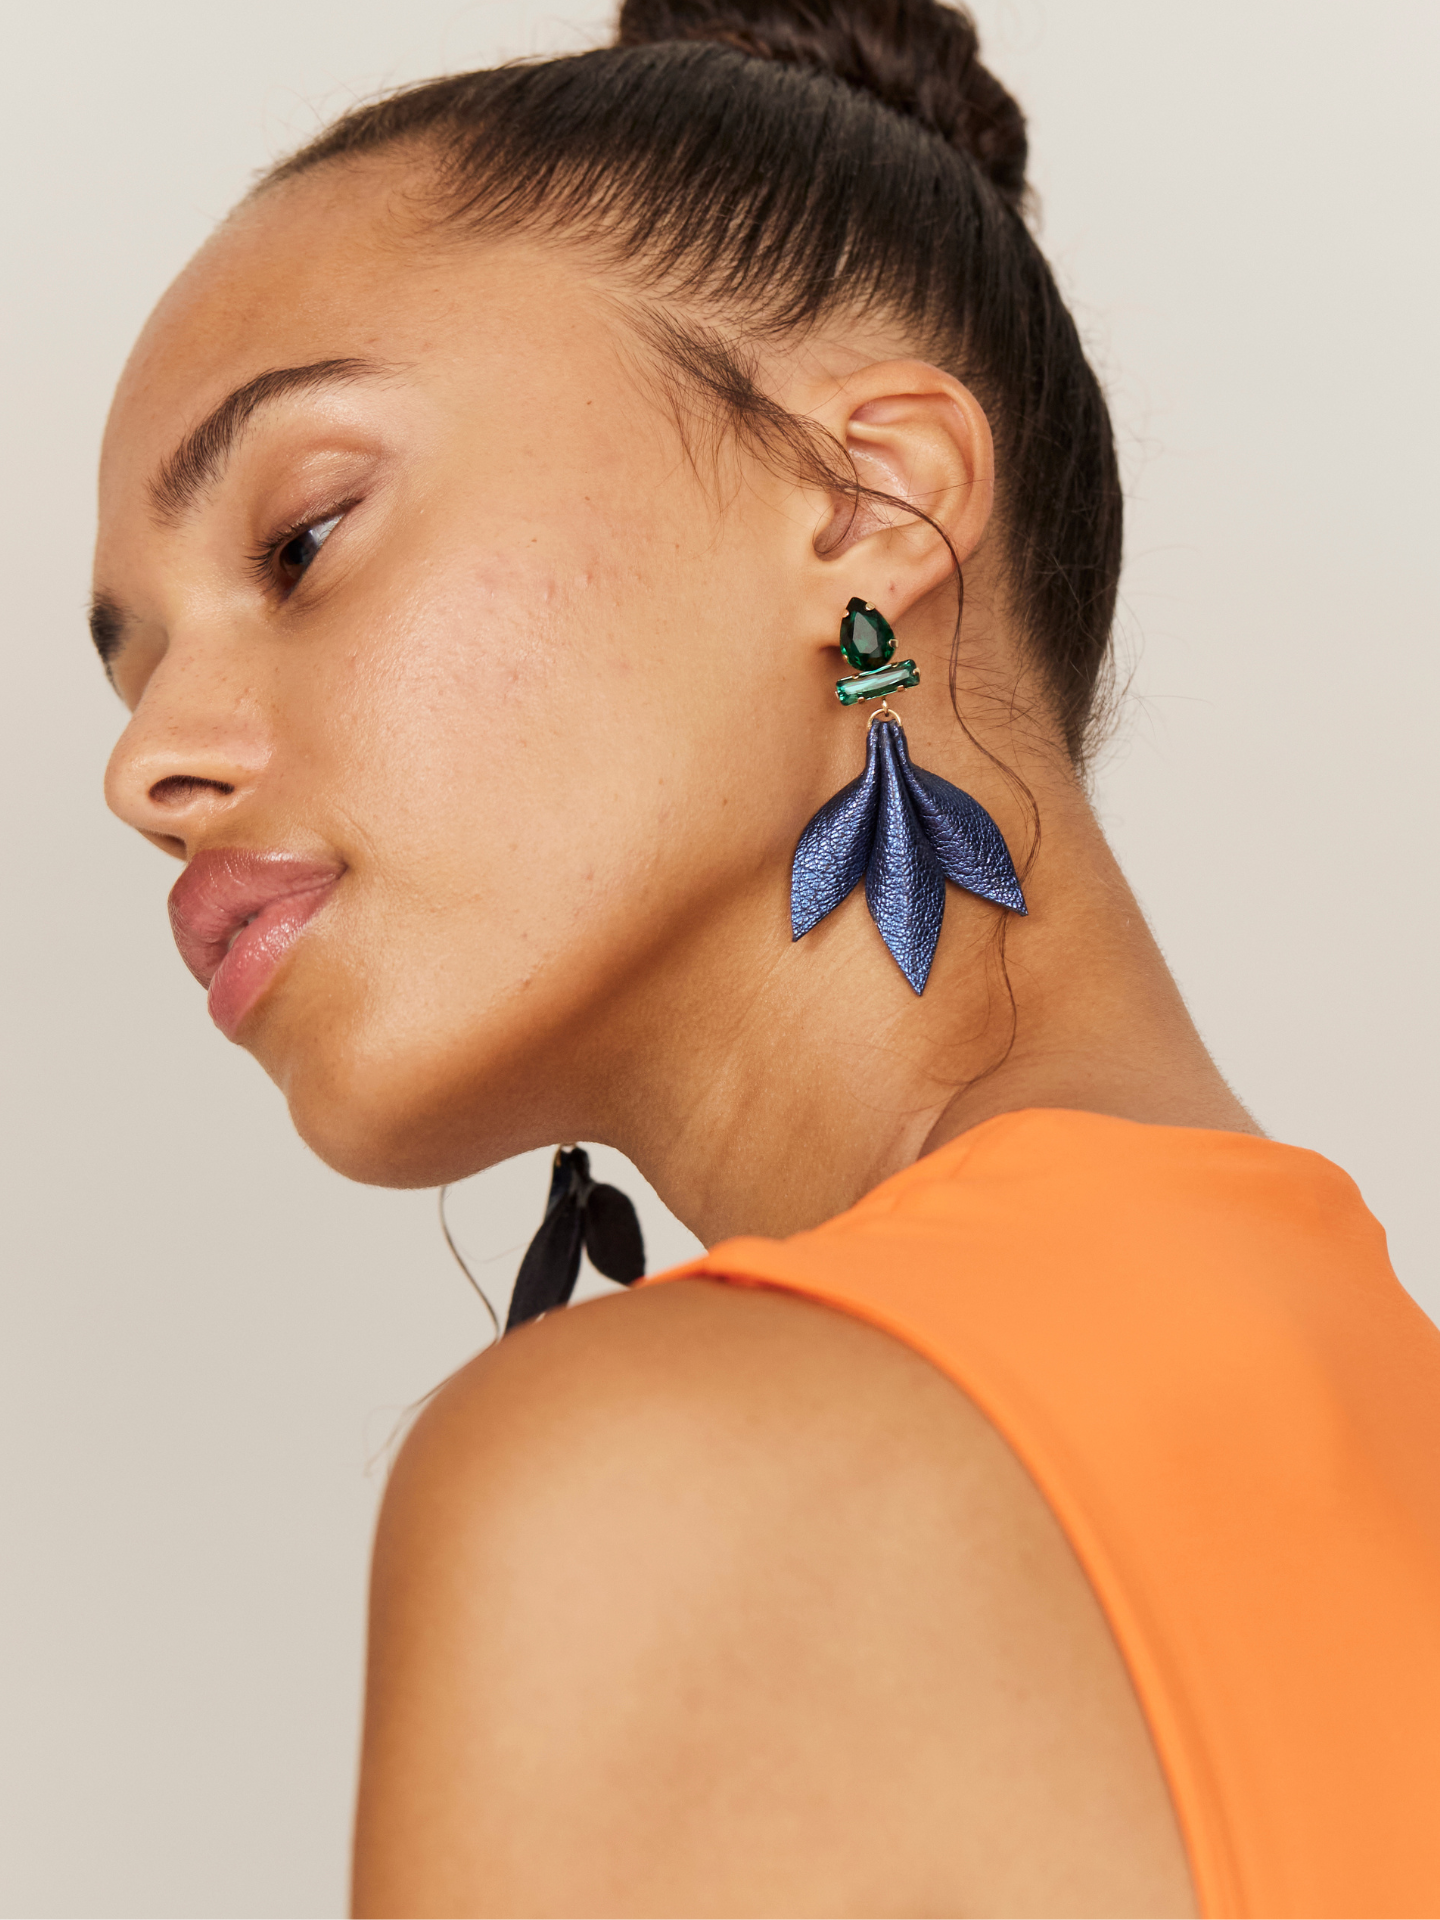 Attraktive Frau im Profil mit blauen Nappa Leder Ohrringen mit grünem Stecker